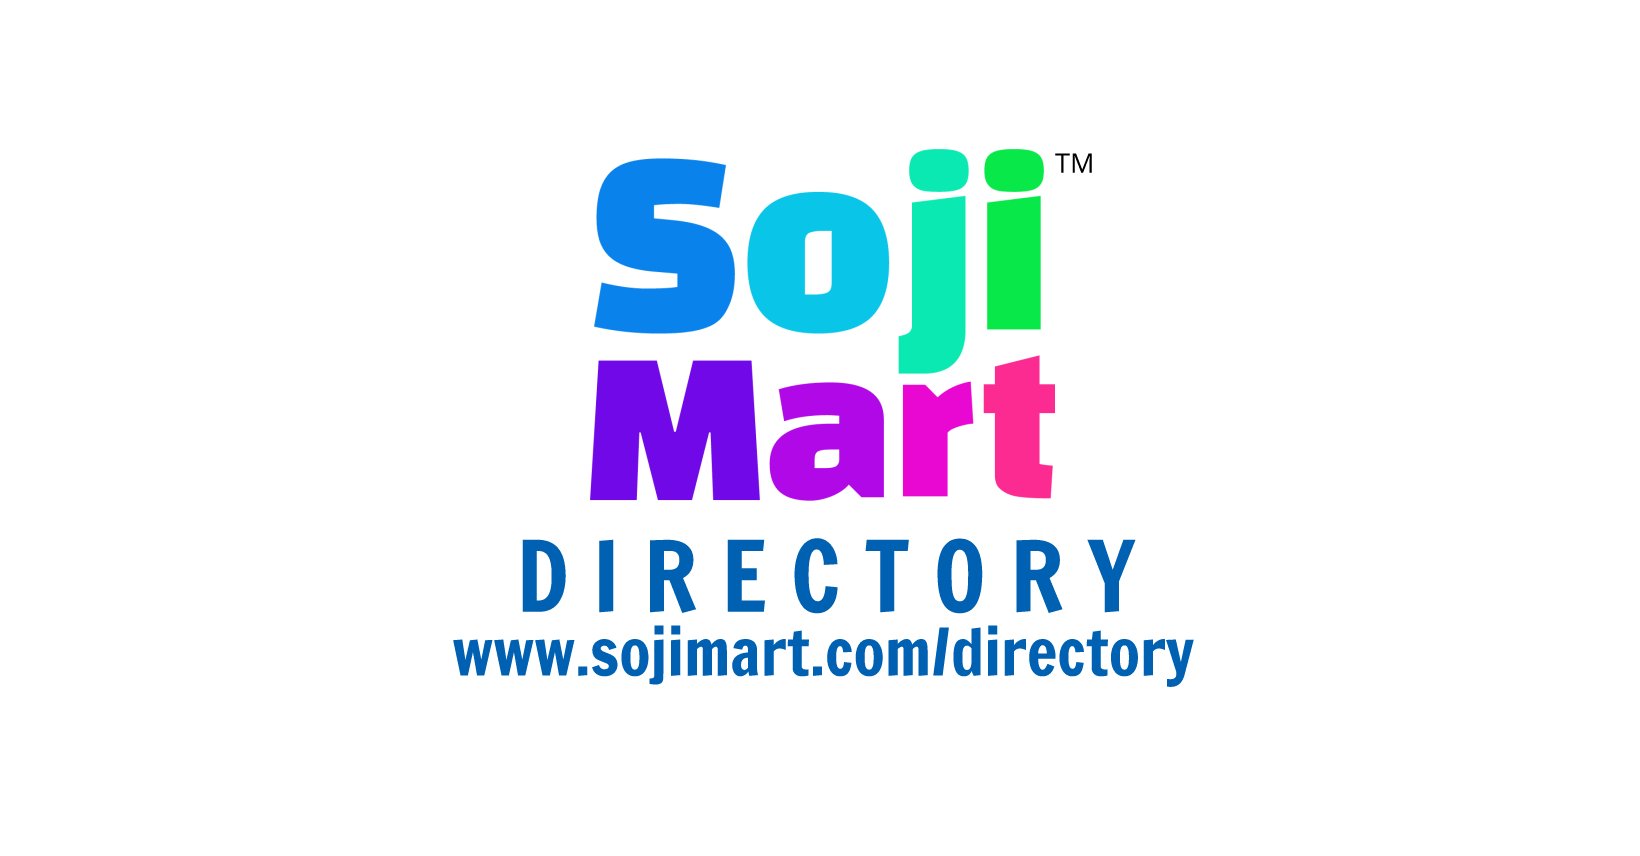 SojiMart Directory